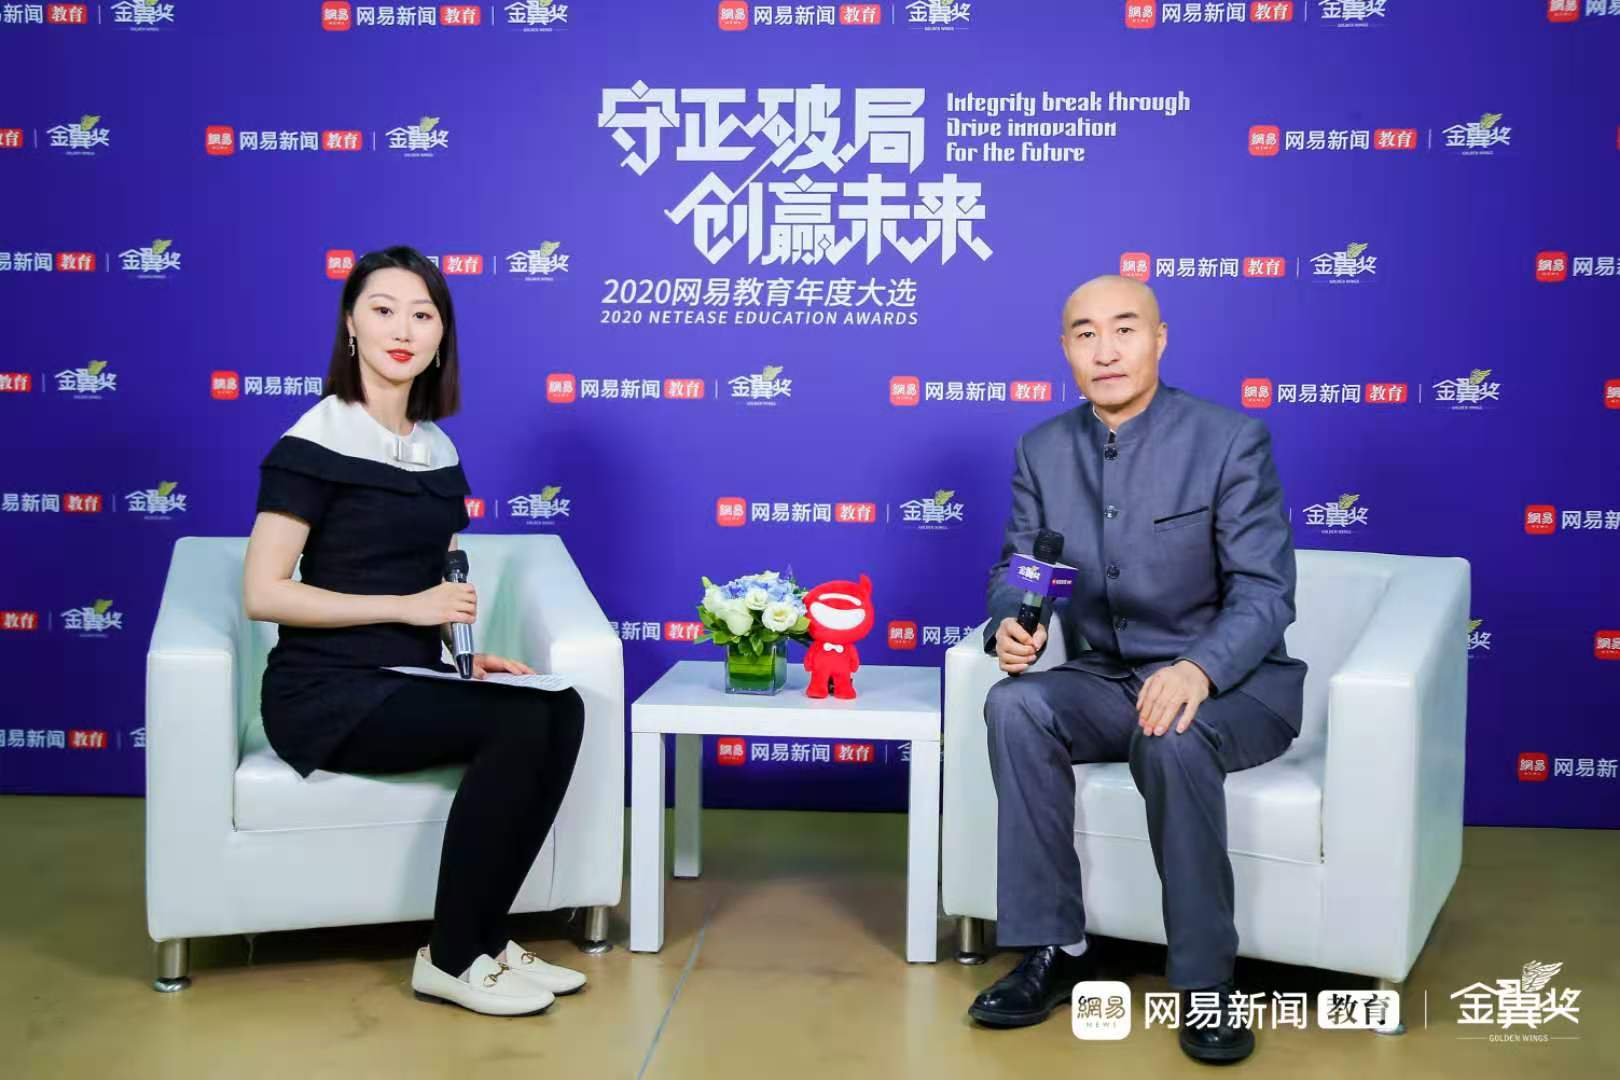 中青国培王鸿达院长出席2020网易教育金翼奖颁奖典礼并接受专访